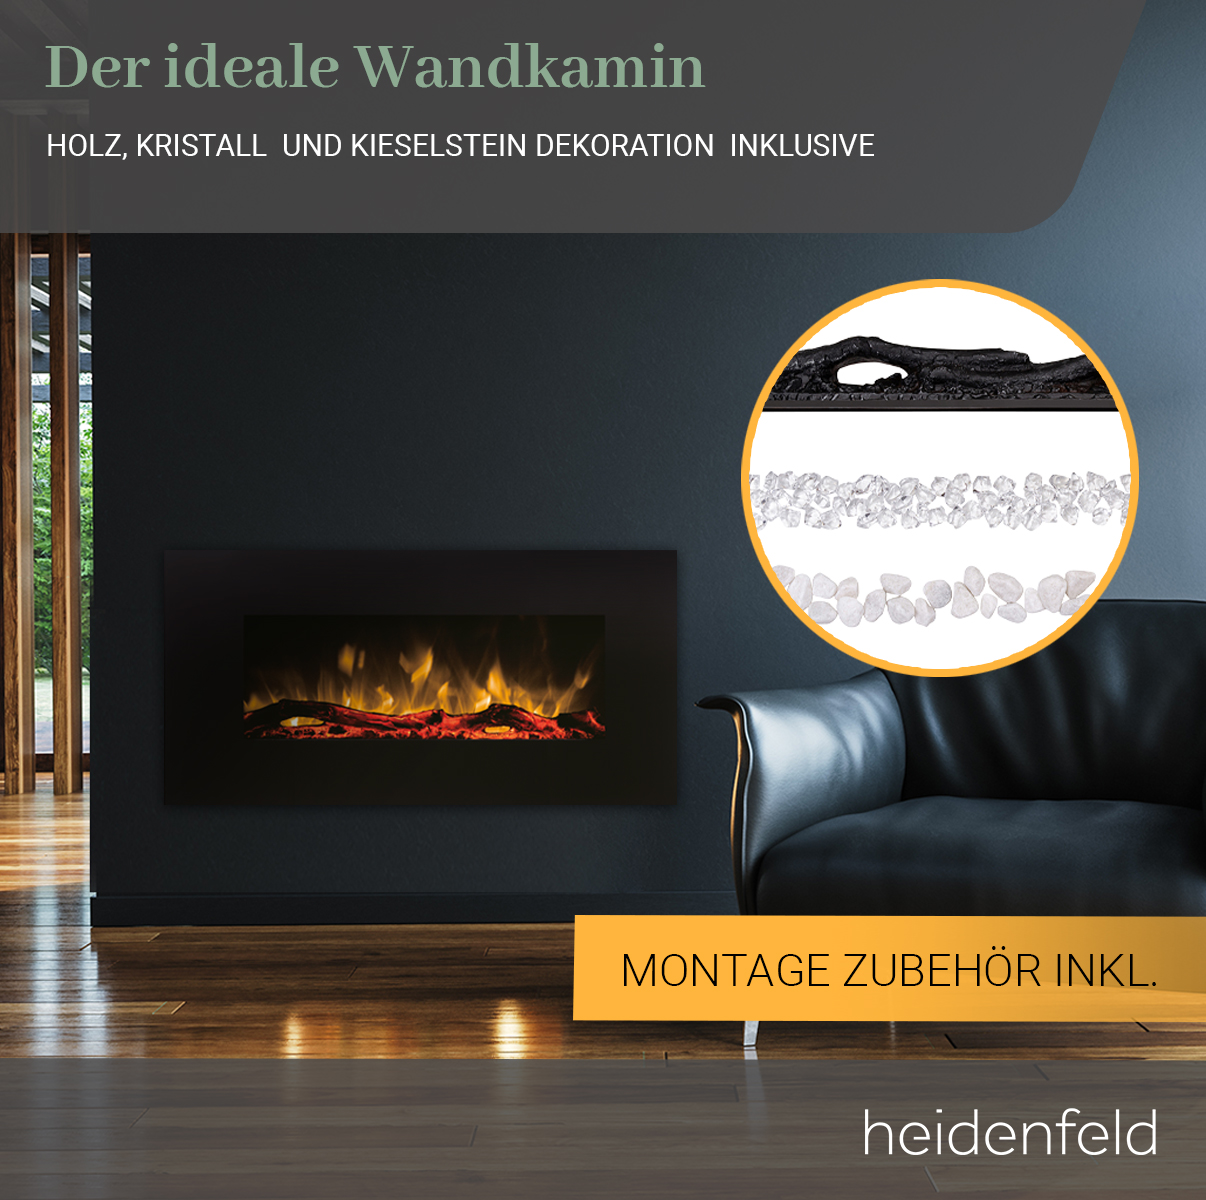 HEIDENFELD Wandkamin HF-WK300 107.0 x 55.0 Watt) Elektrokamin (1500 cm